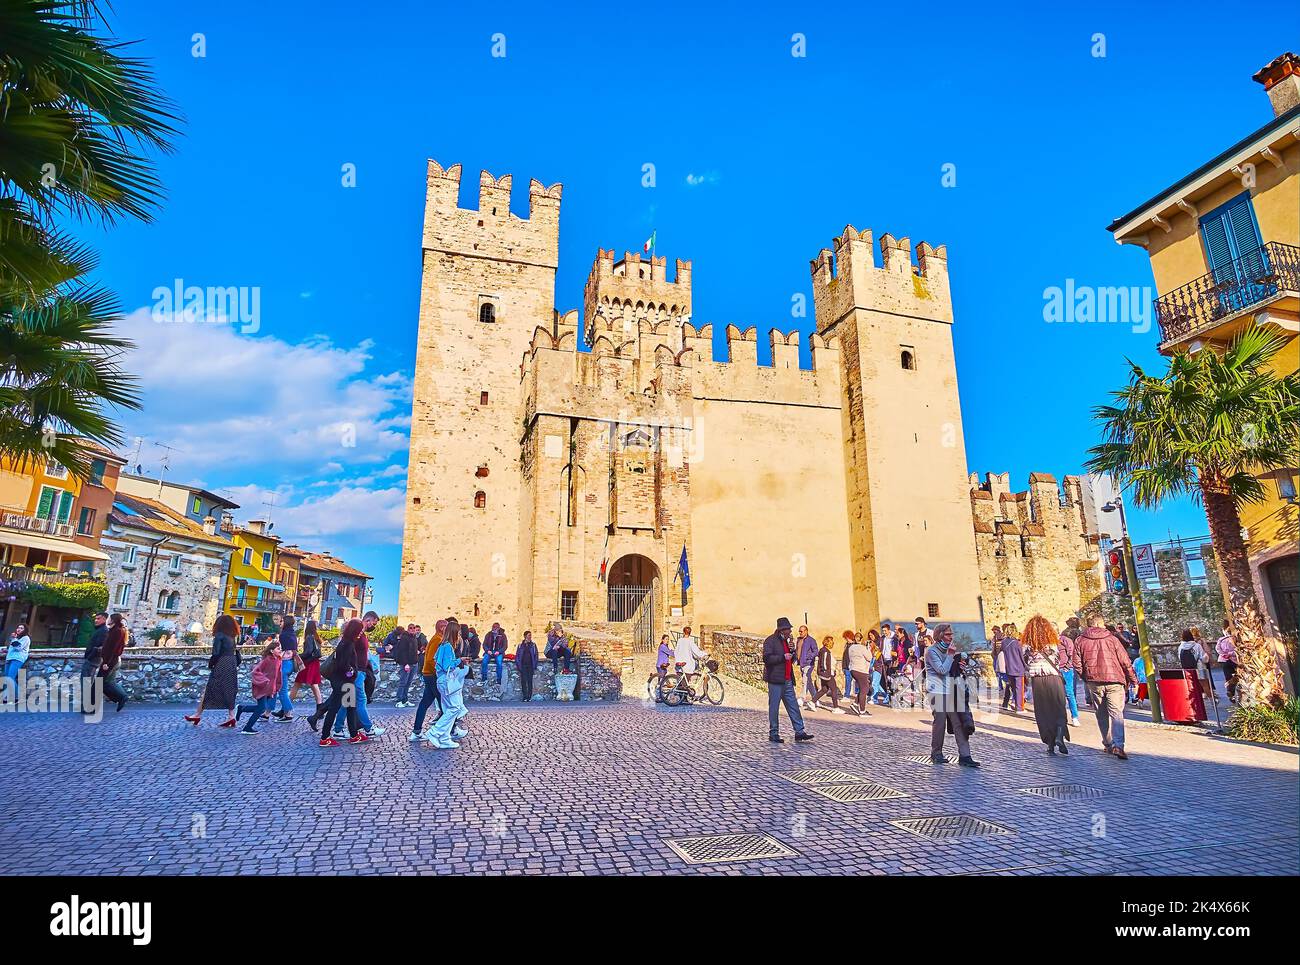 SIRMIONE, ITALIEN - 10. APRIL 2022: Erhaltene historische Burg Scaligero auf der Piazza Castello mit massiven Steinmauern und hohen Türmen, am 10. April in Sirm Stockfoto